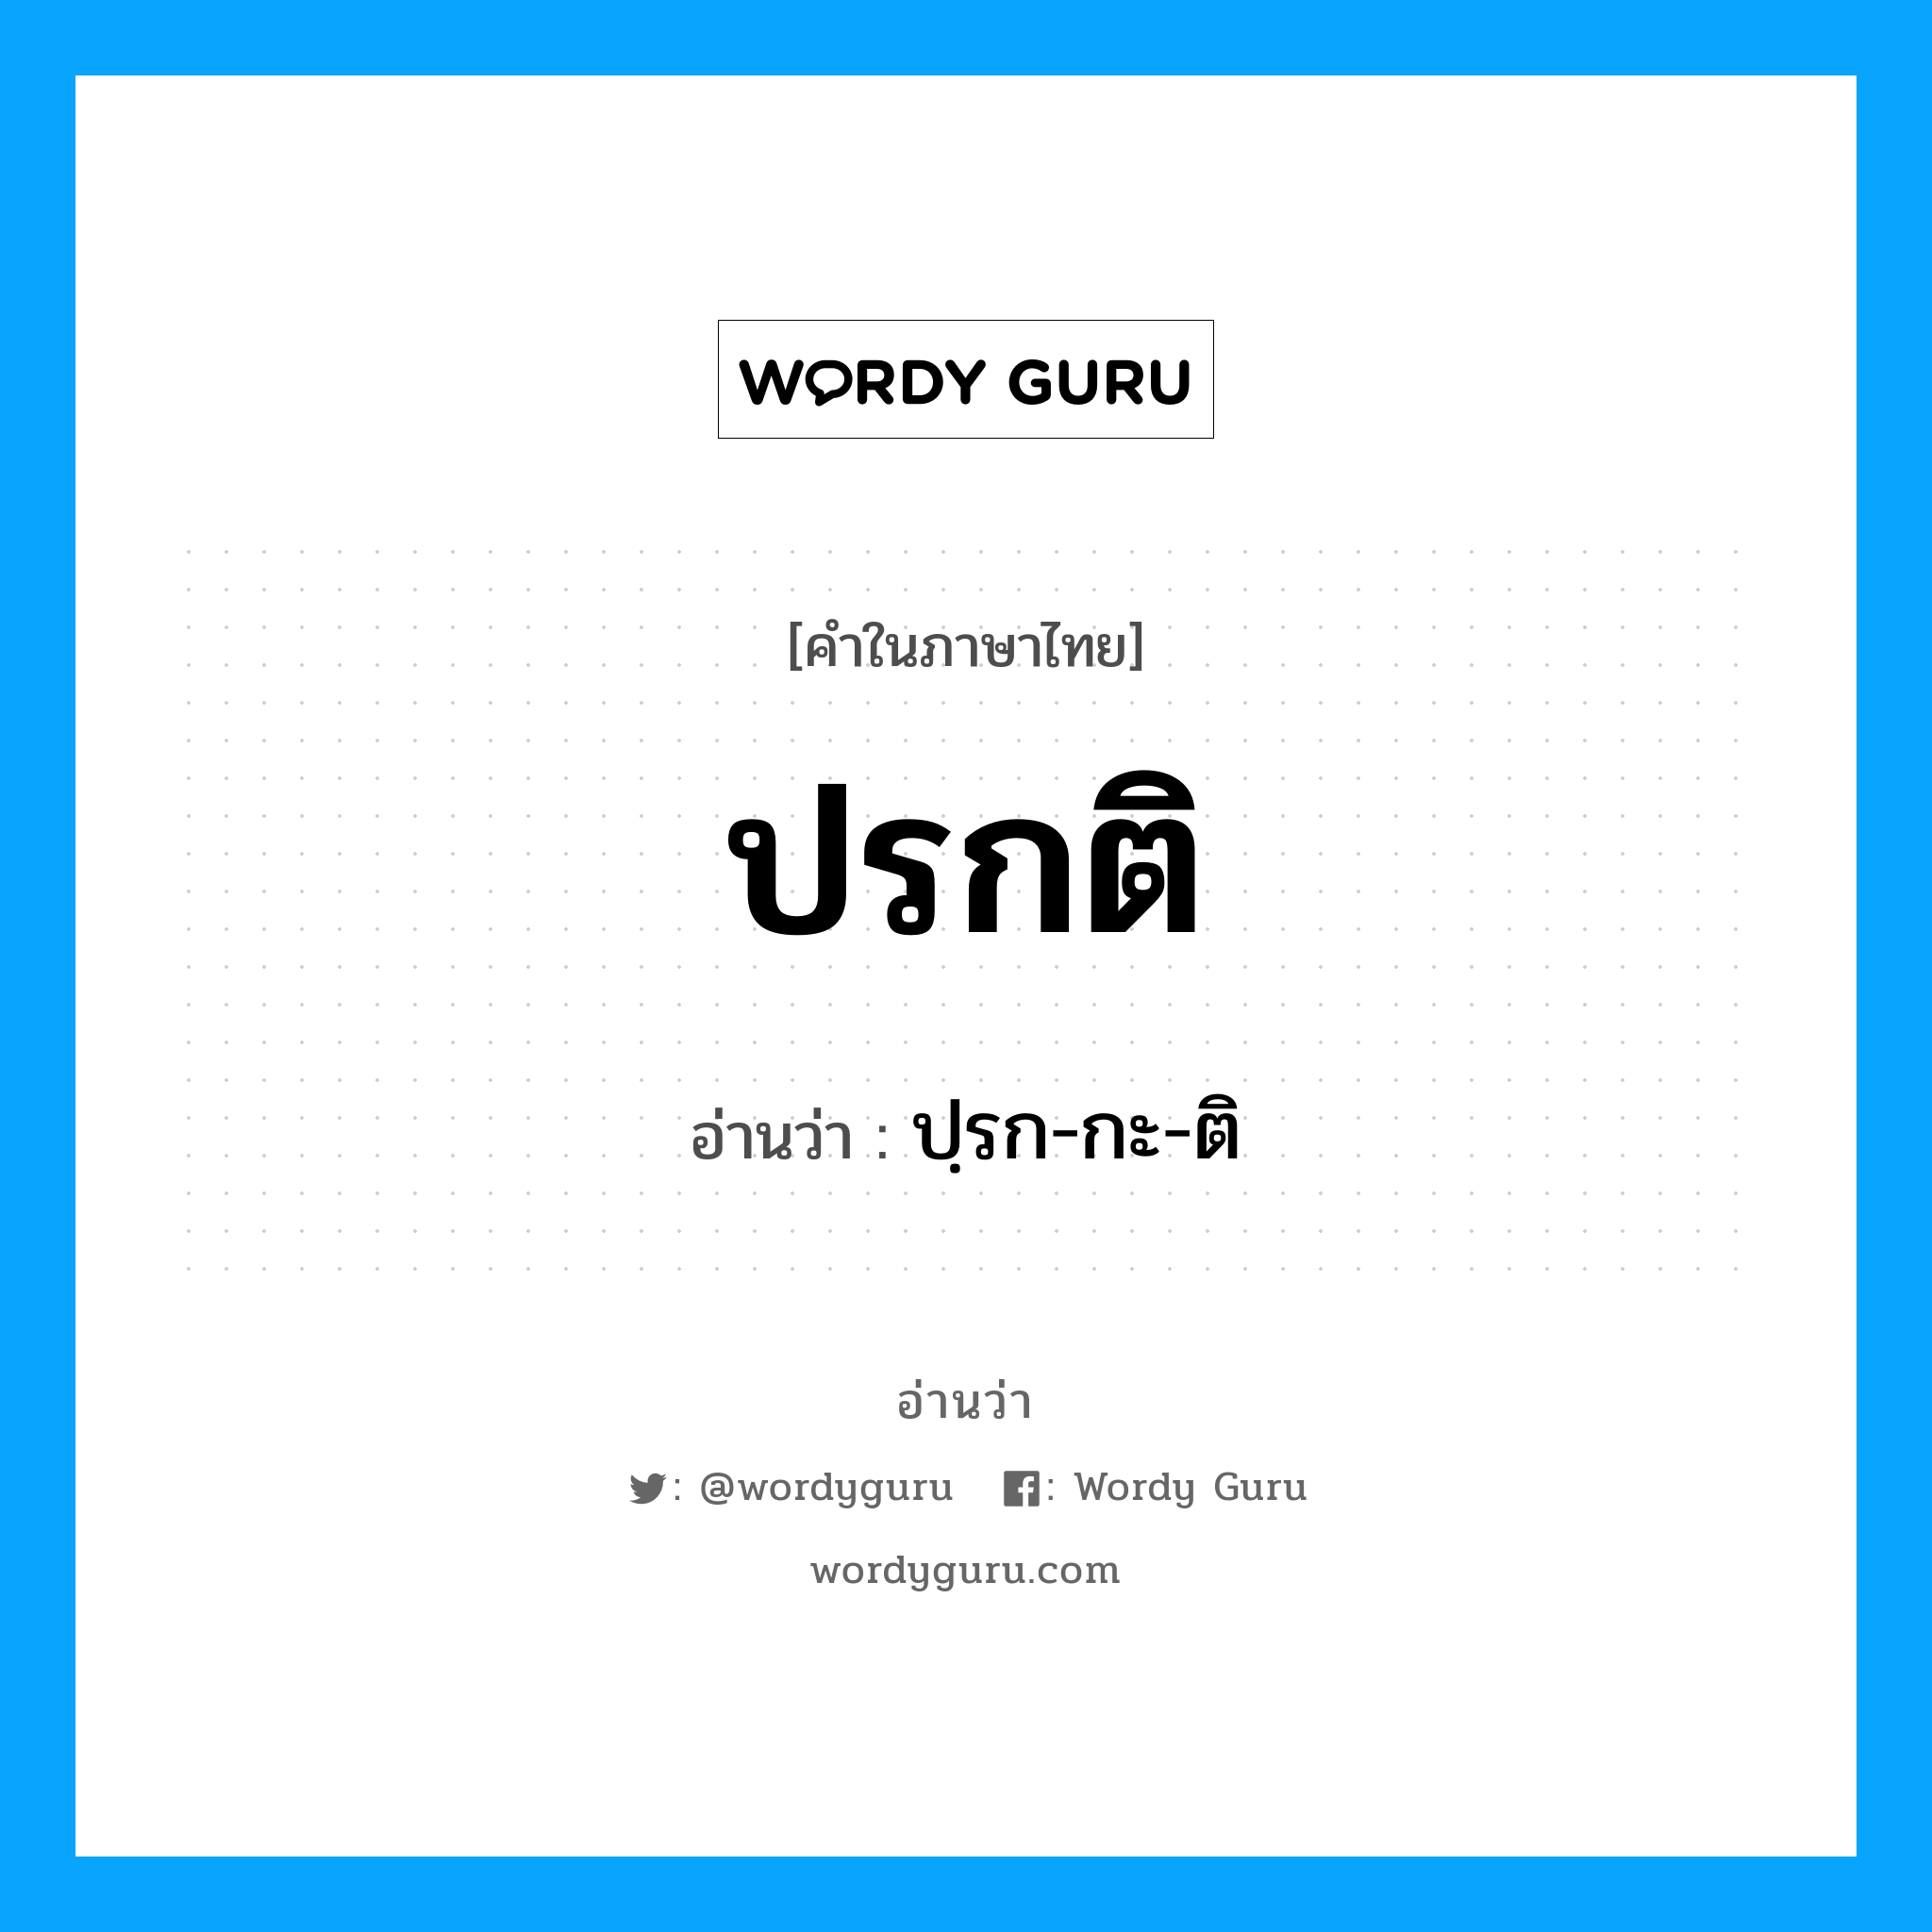 ปรก-กะ-ติ เป็นคำอ่านของคำไหน?, คำในภาษาไทย ปฺรก-กะ-ติ อ่านว่า ปรกติ